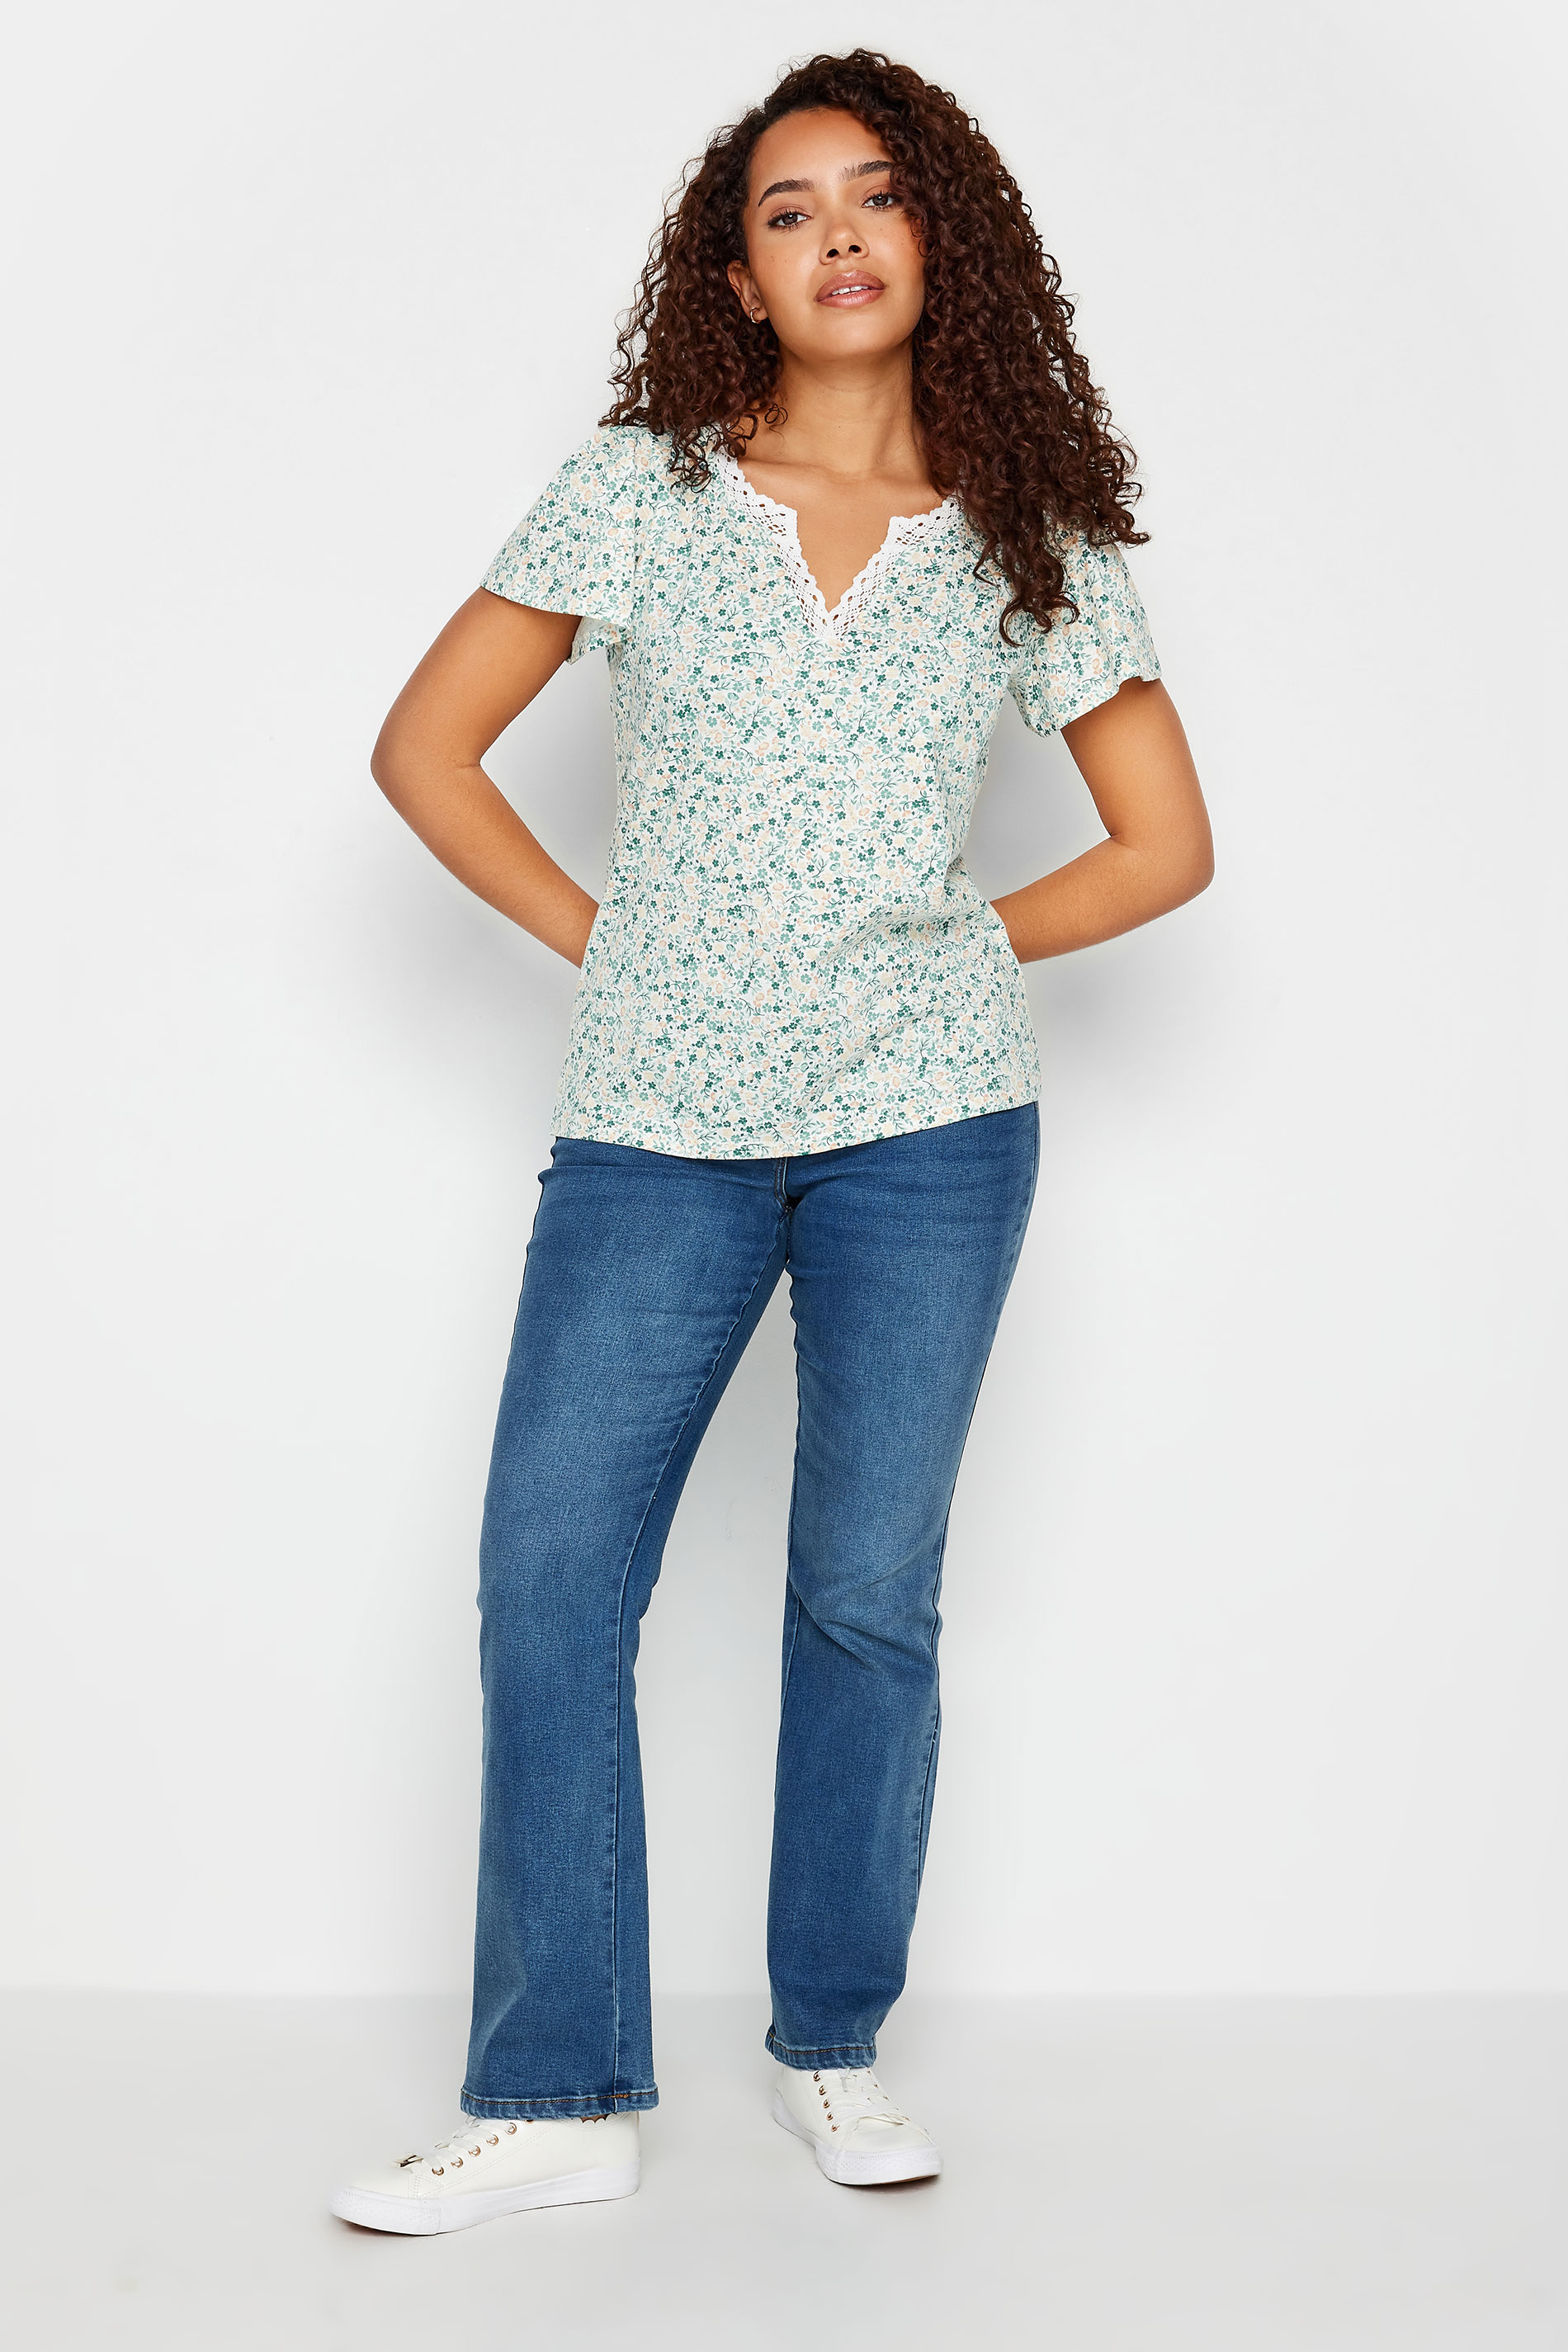 M&Co Green Floral Print Lace Trim T-Shirt | M&Co 2